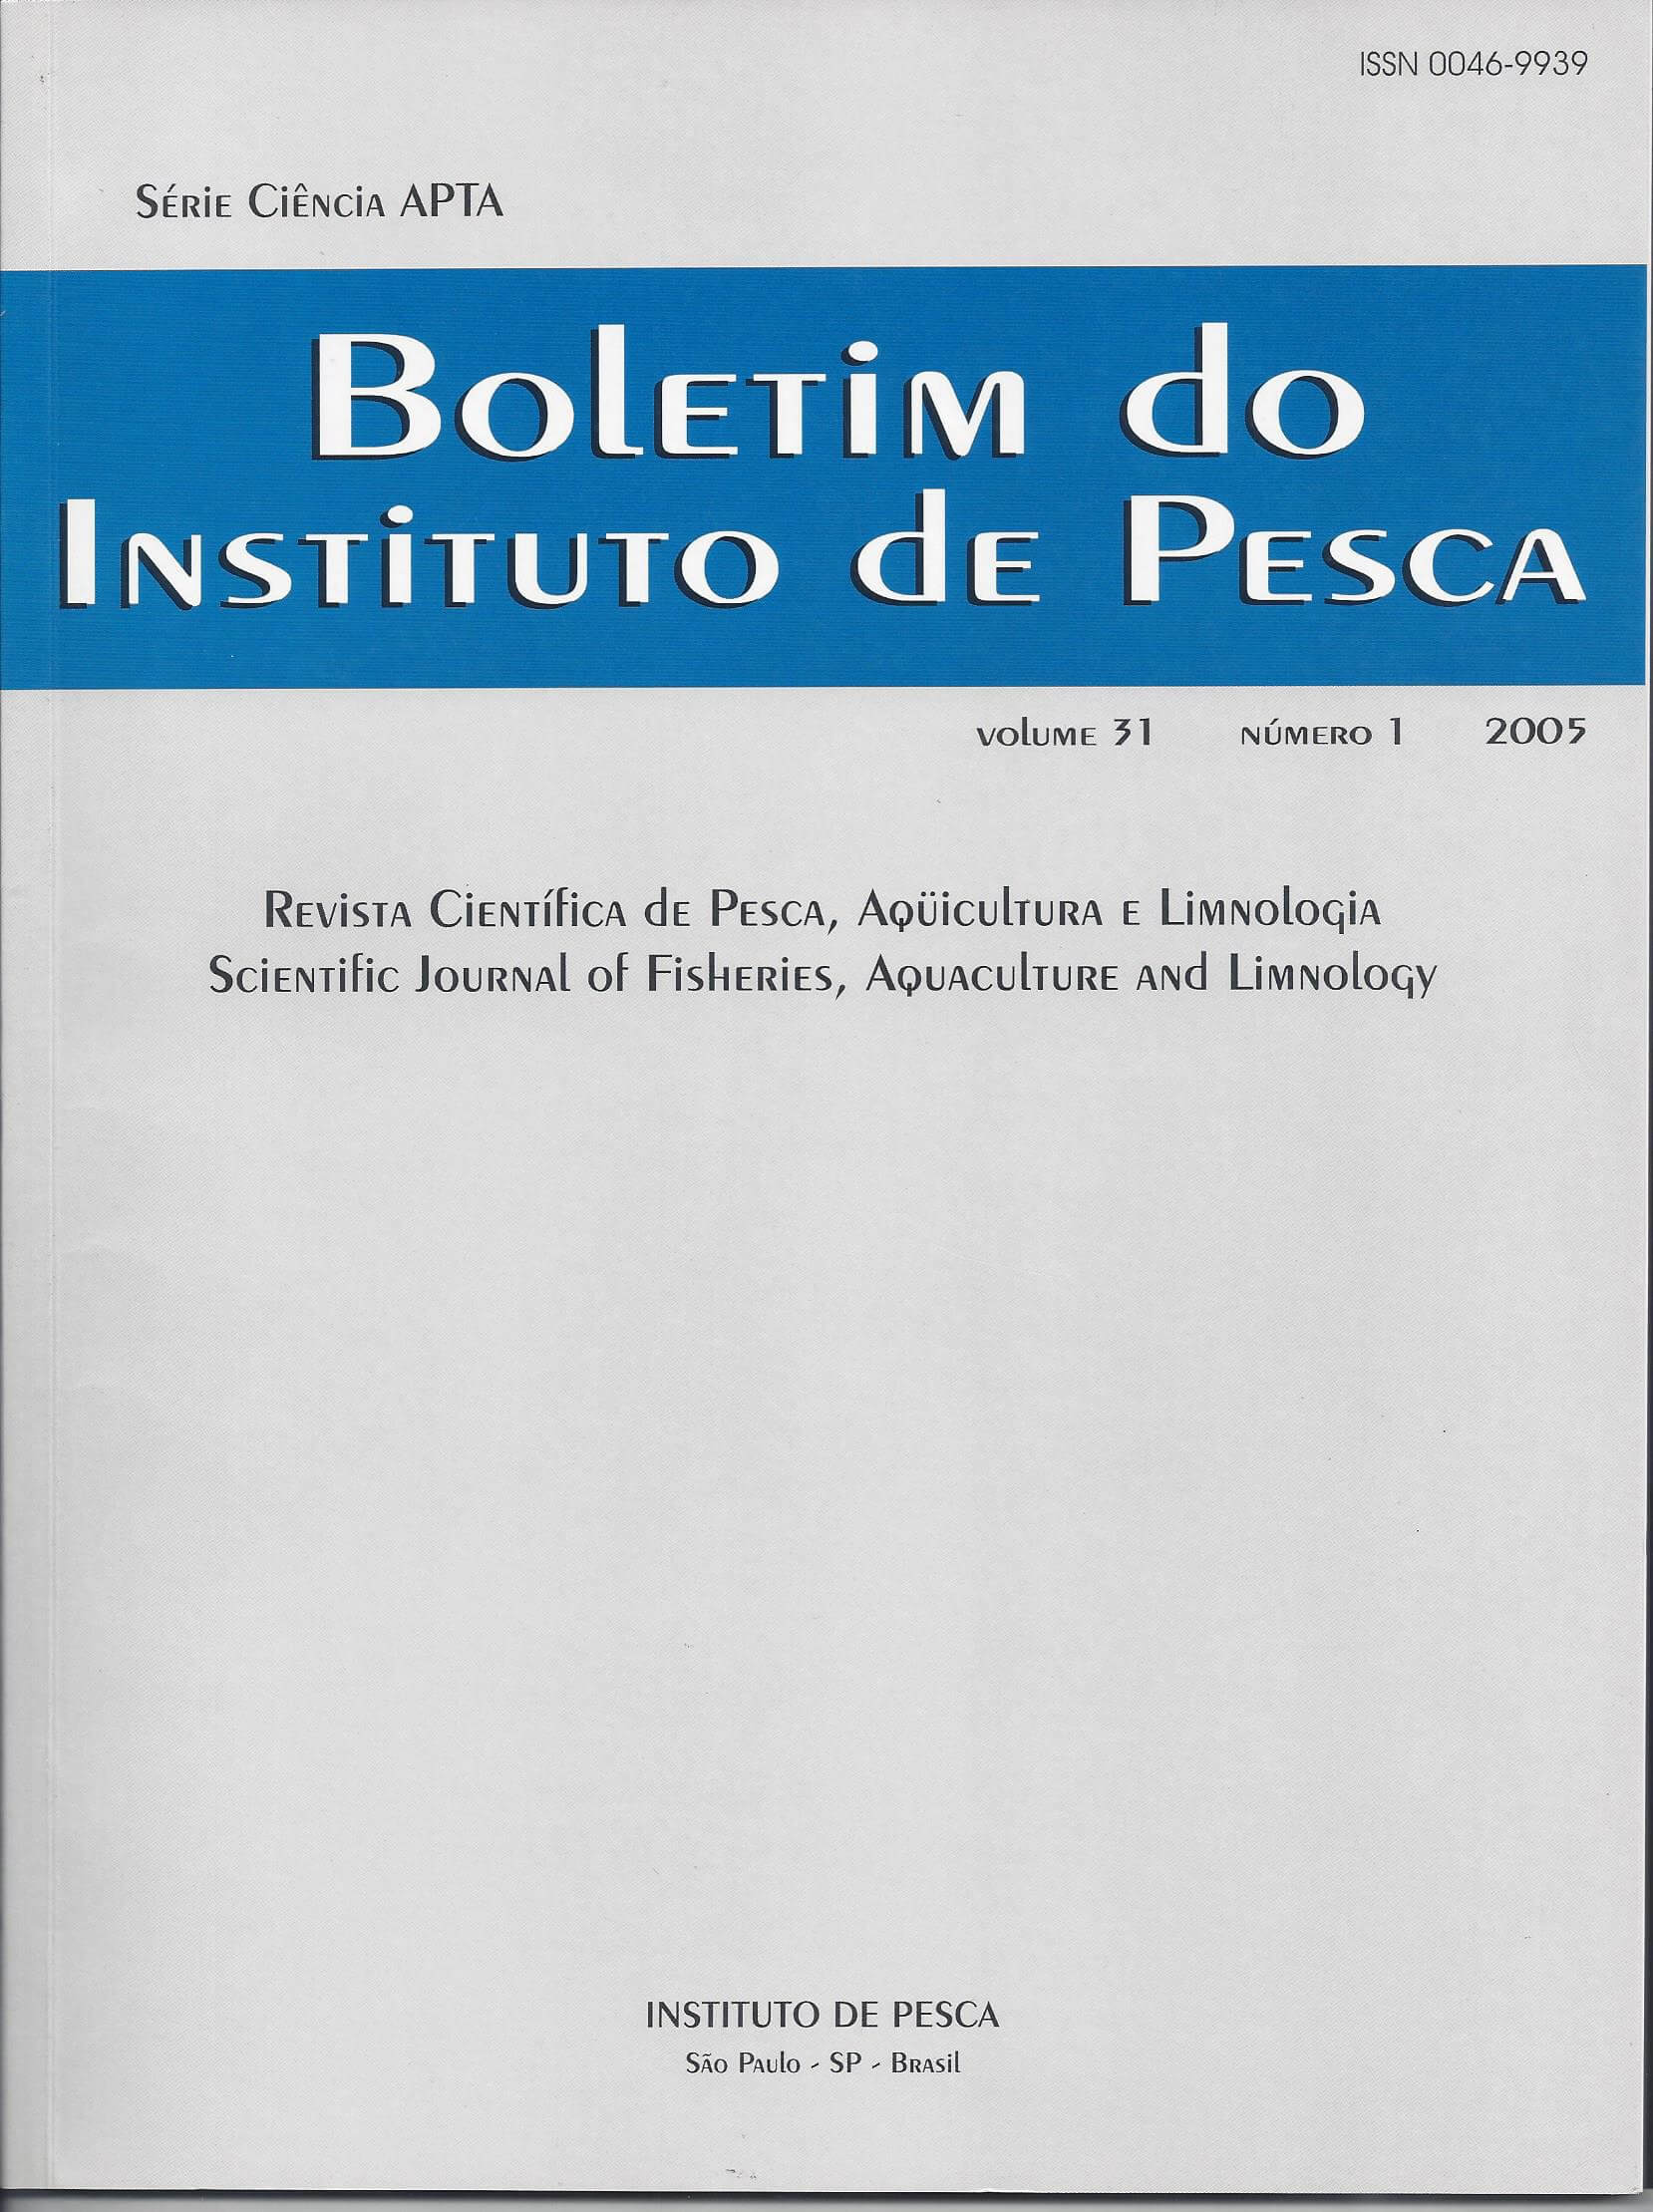 					View Vol. 31 No. 1 (2005): BOLETIM DO INSTITUTO DE PESCA
				